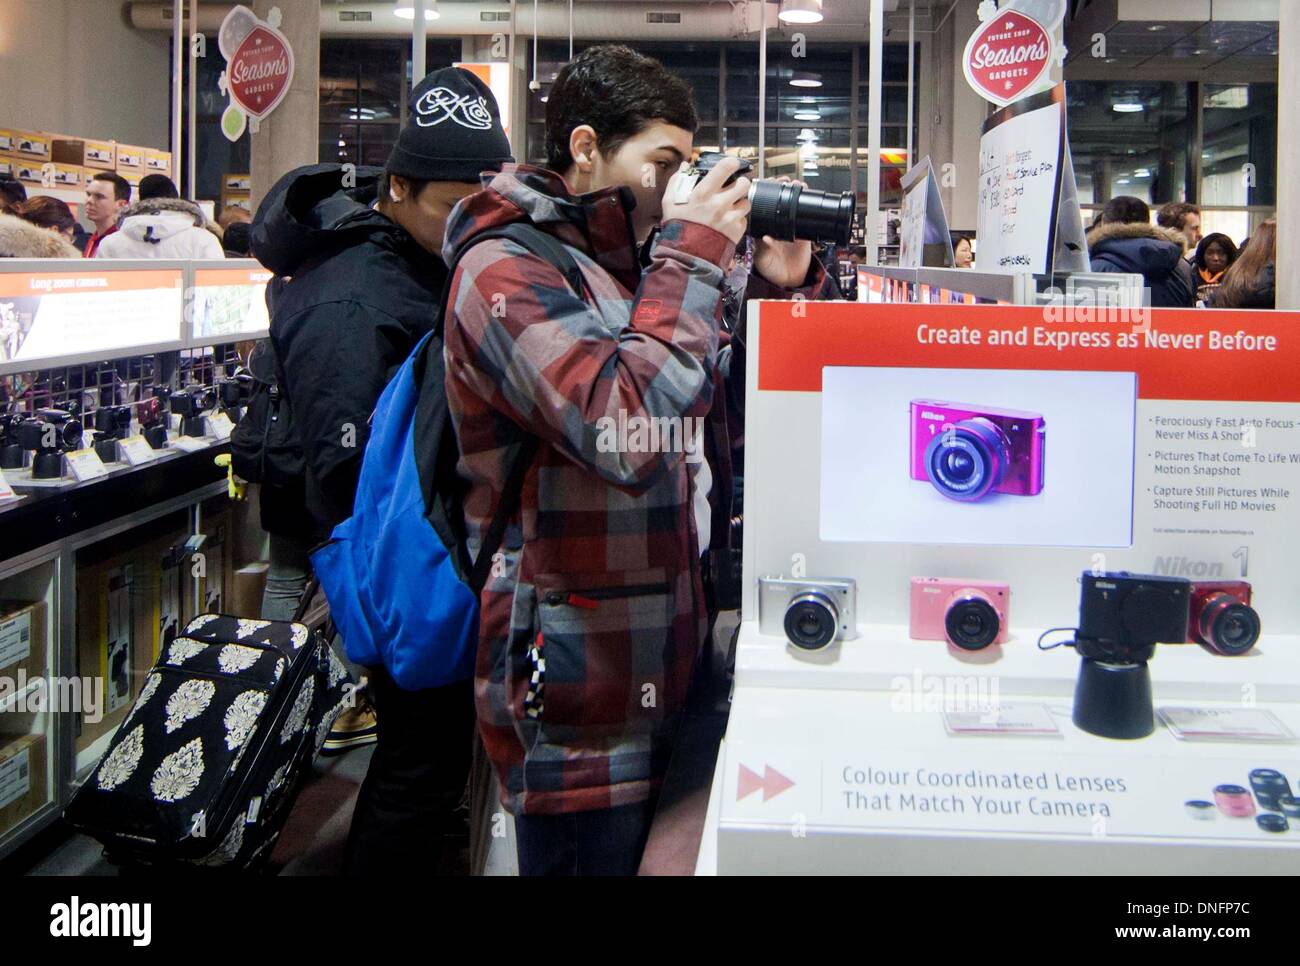 Toronto, Canada. Dec 26, 2013. Les clients à faire leurs achats dans un magasin le lendemain à Toronto, Canada, 26 déc 2013. Boxing Day est l'un des jours de shopping les plus importants de l'année au Canada. Credit : Zou Zheng/Xinhua/Alamy Live News Banque D'Images